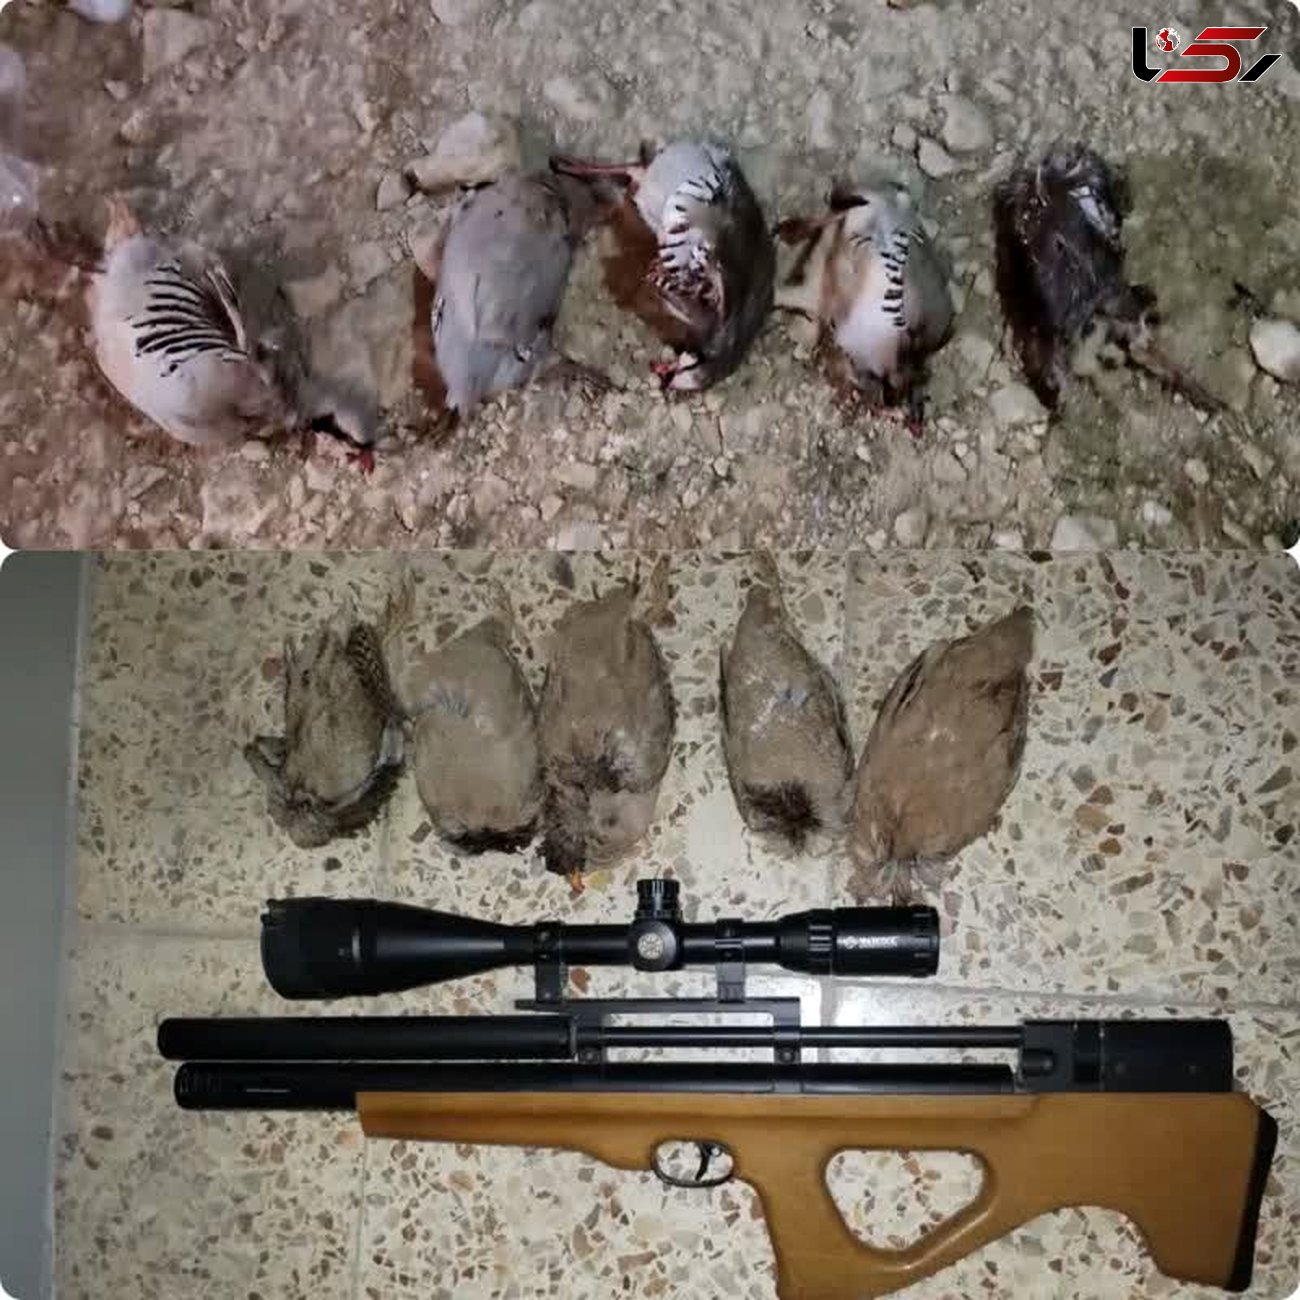 دستگیری 3 گروه شکارچی غیرمجاز در گچساران/کشف گوشت بز کوهی در خانه شکارچی 